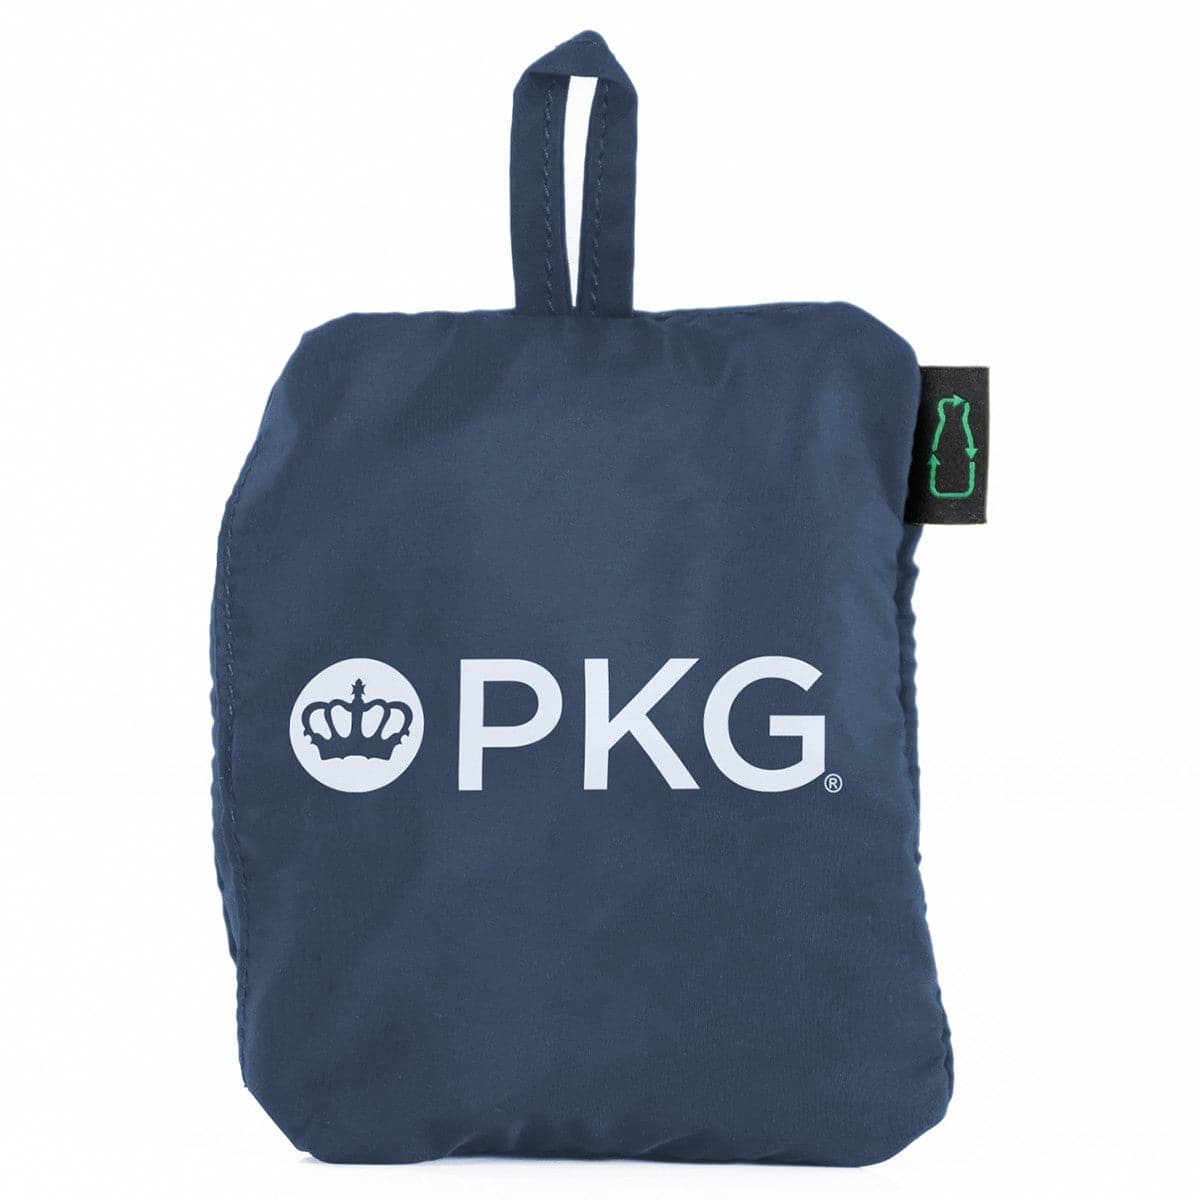 PKG Umiak Recycled Packable Crossbody Bag